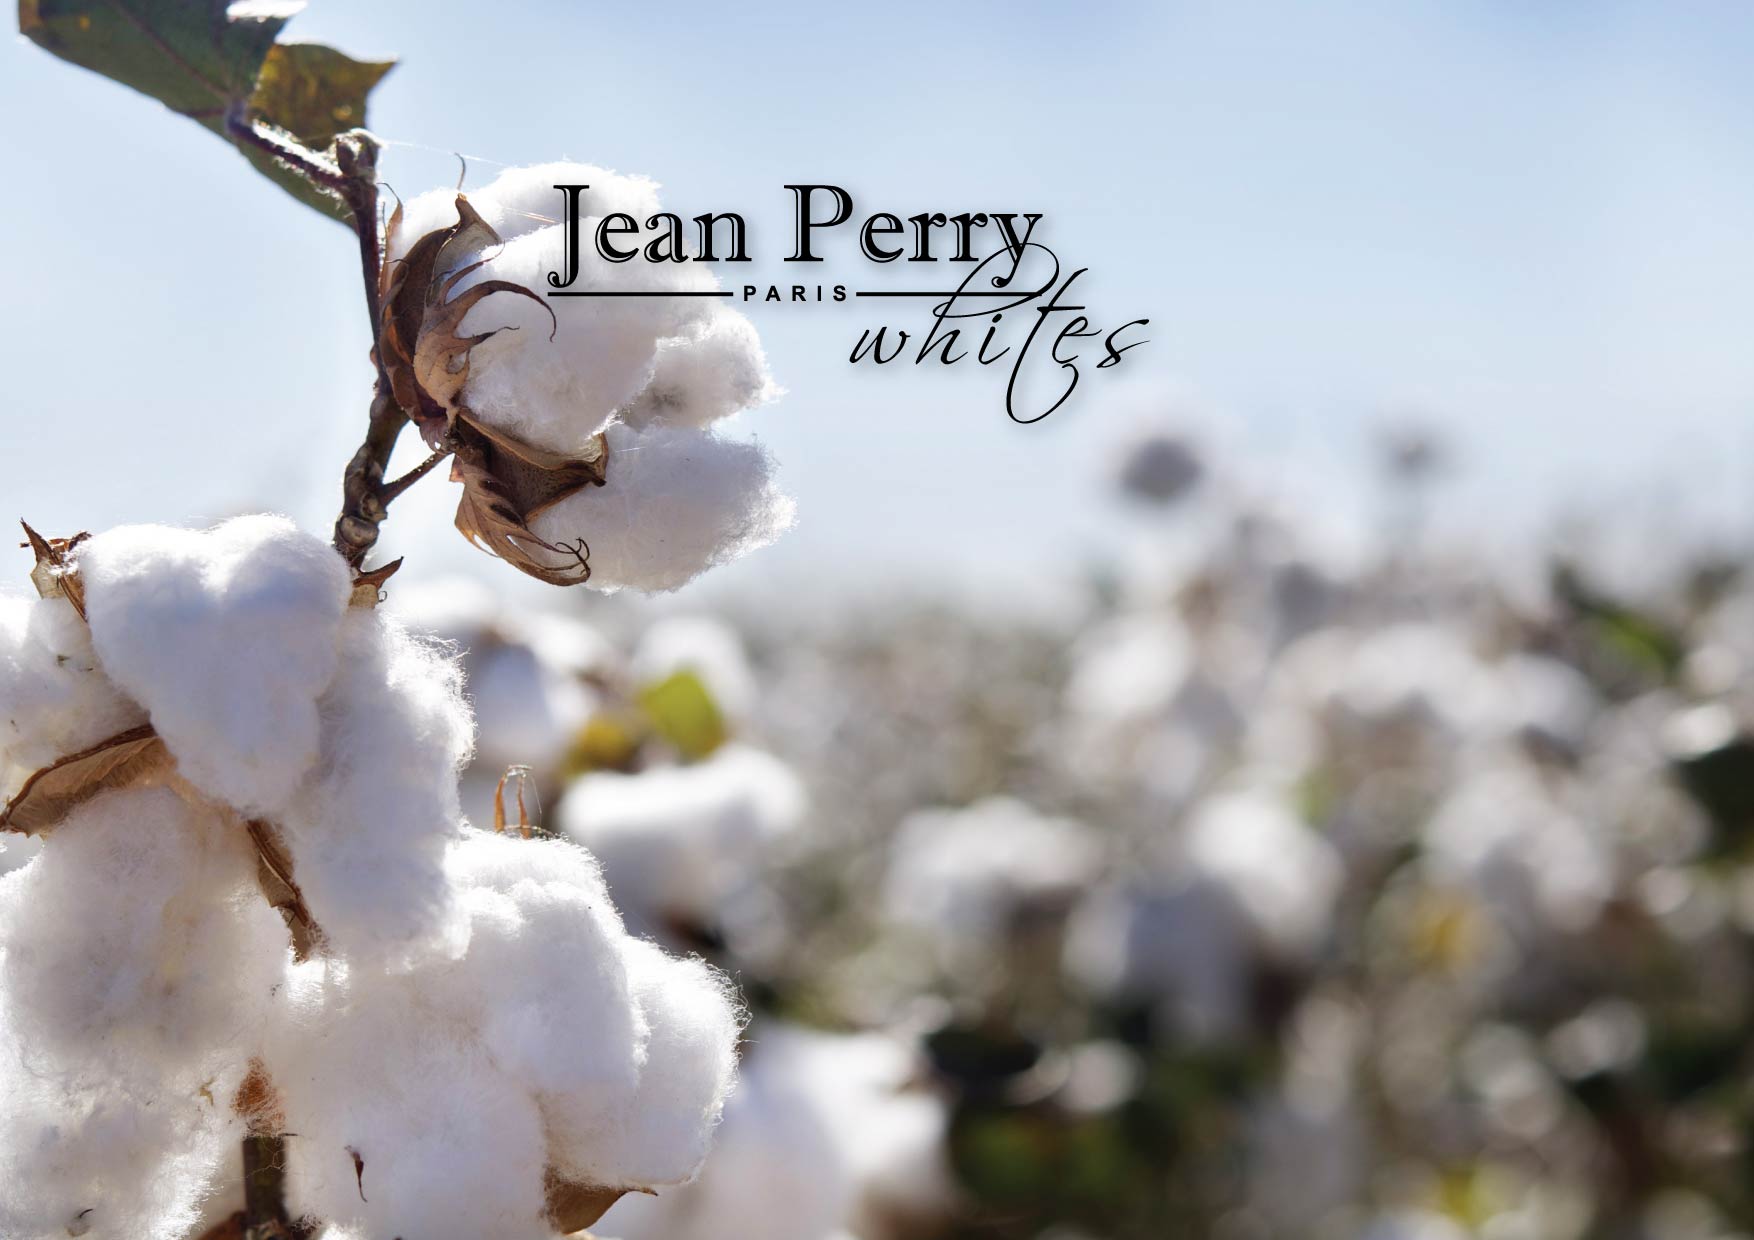 khăn tắm jean perry man chất liệu cotton 41x71 cm 1